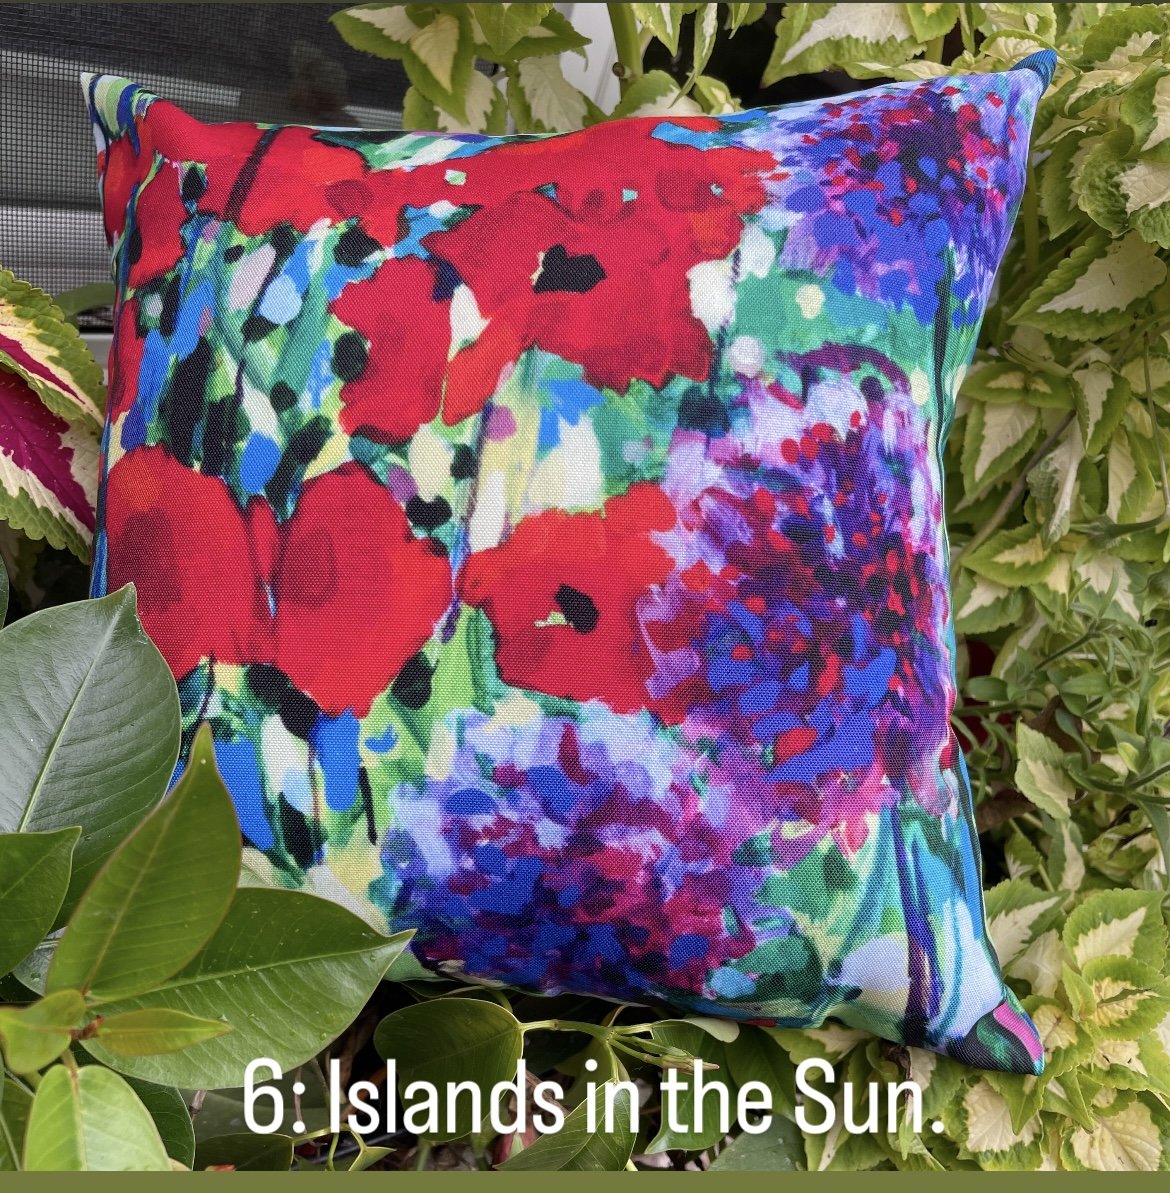 Pillow pop up islands in the sun alliums jpg.jpg